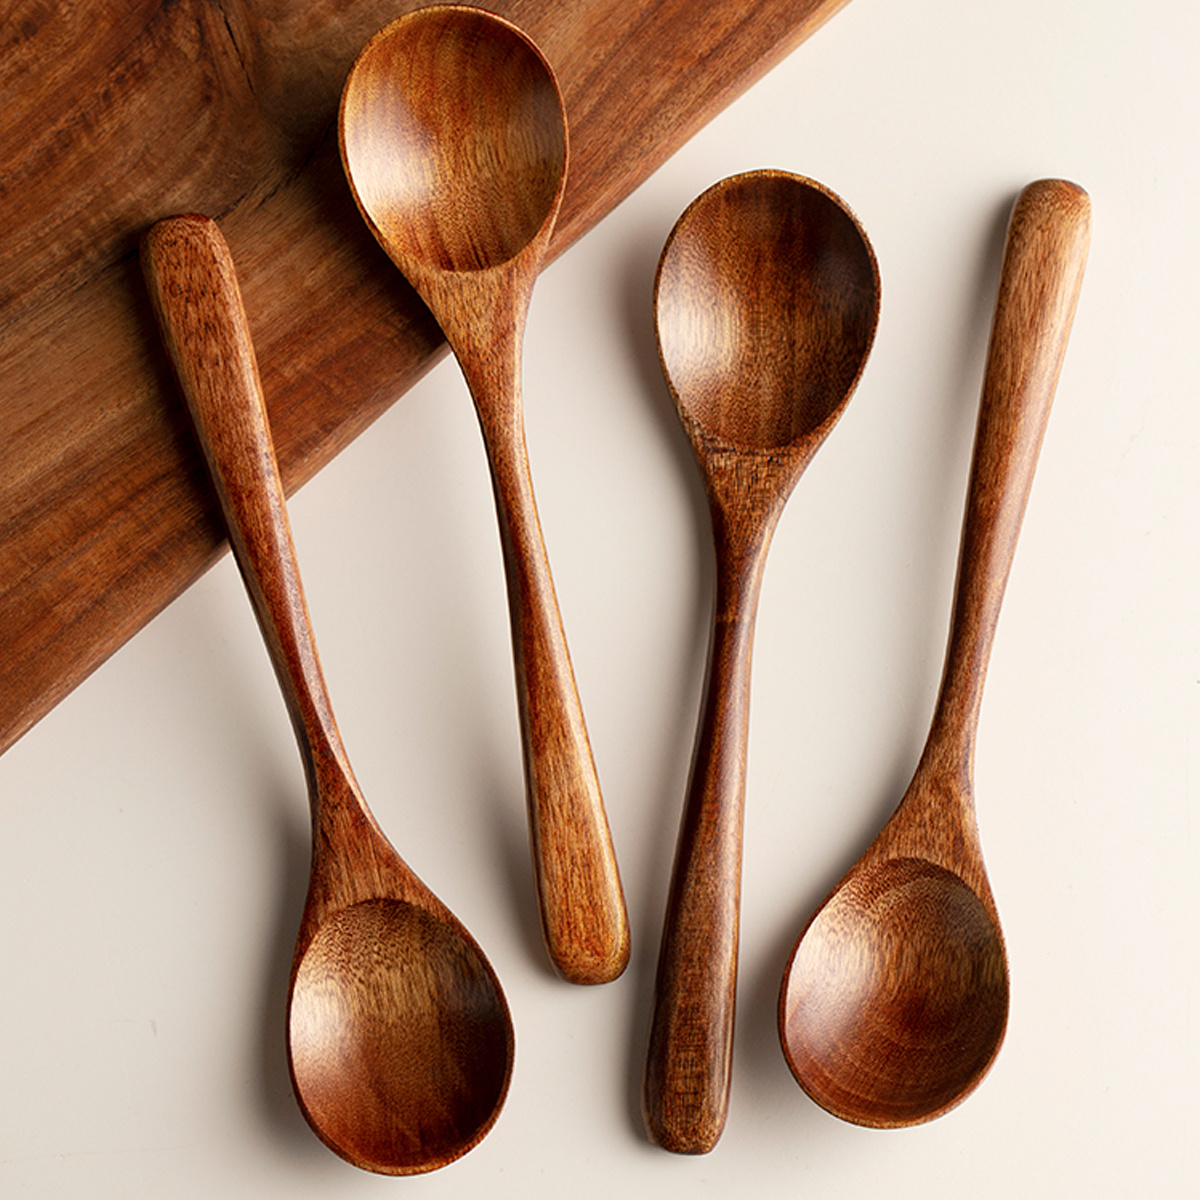 DECO&TOOLS Tienda Online on Instagram: Soporte de gran utilidad al momento  de cocinar. Apoya cucharas, tenedor, espátulas, y otros utensilios, además,  de tapas de ollas. Cuenta con bordes para evitar que líquidos